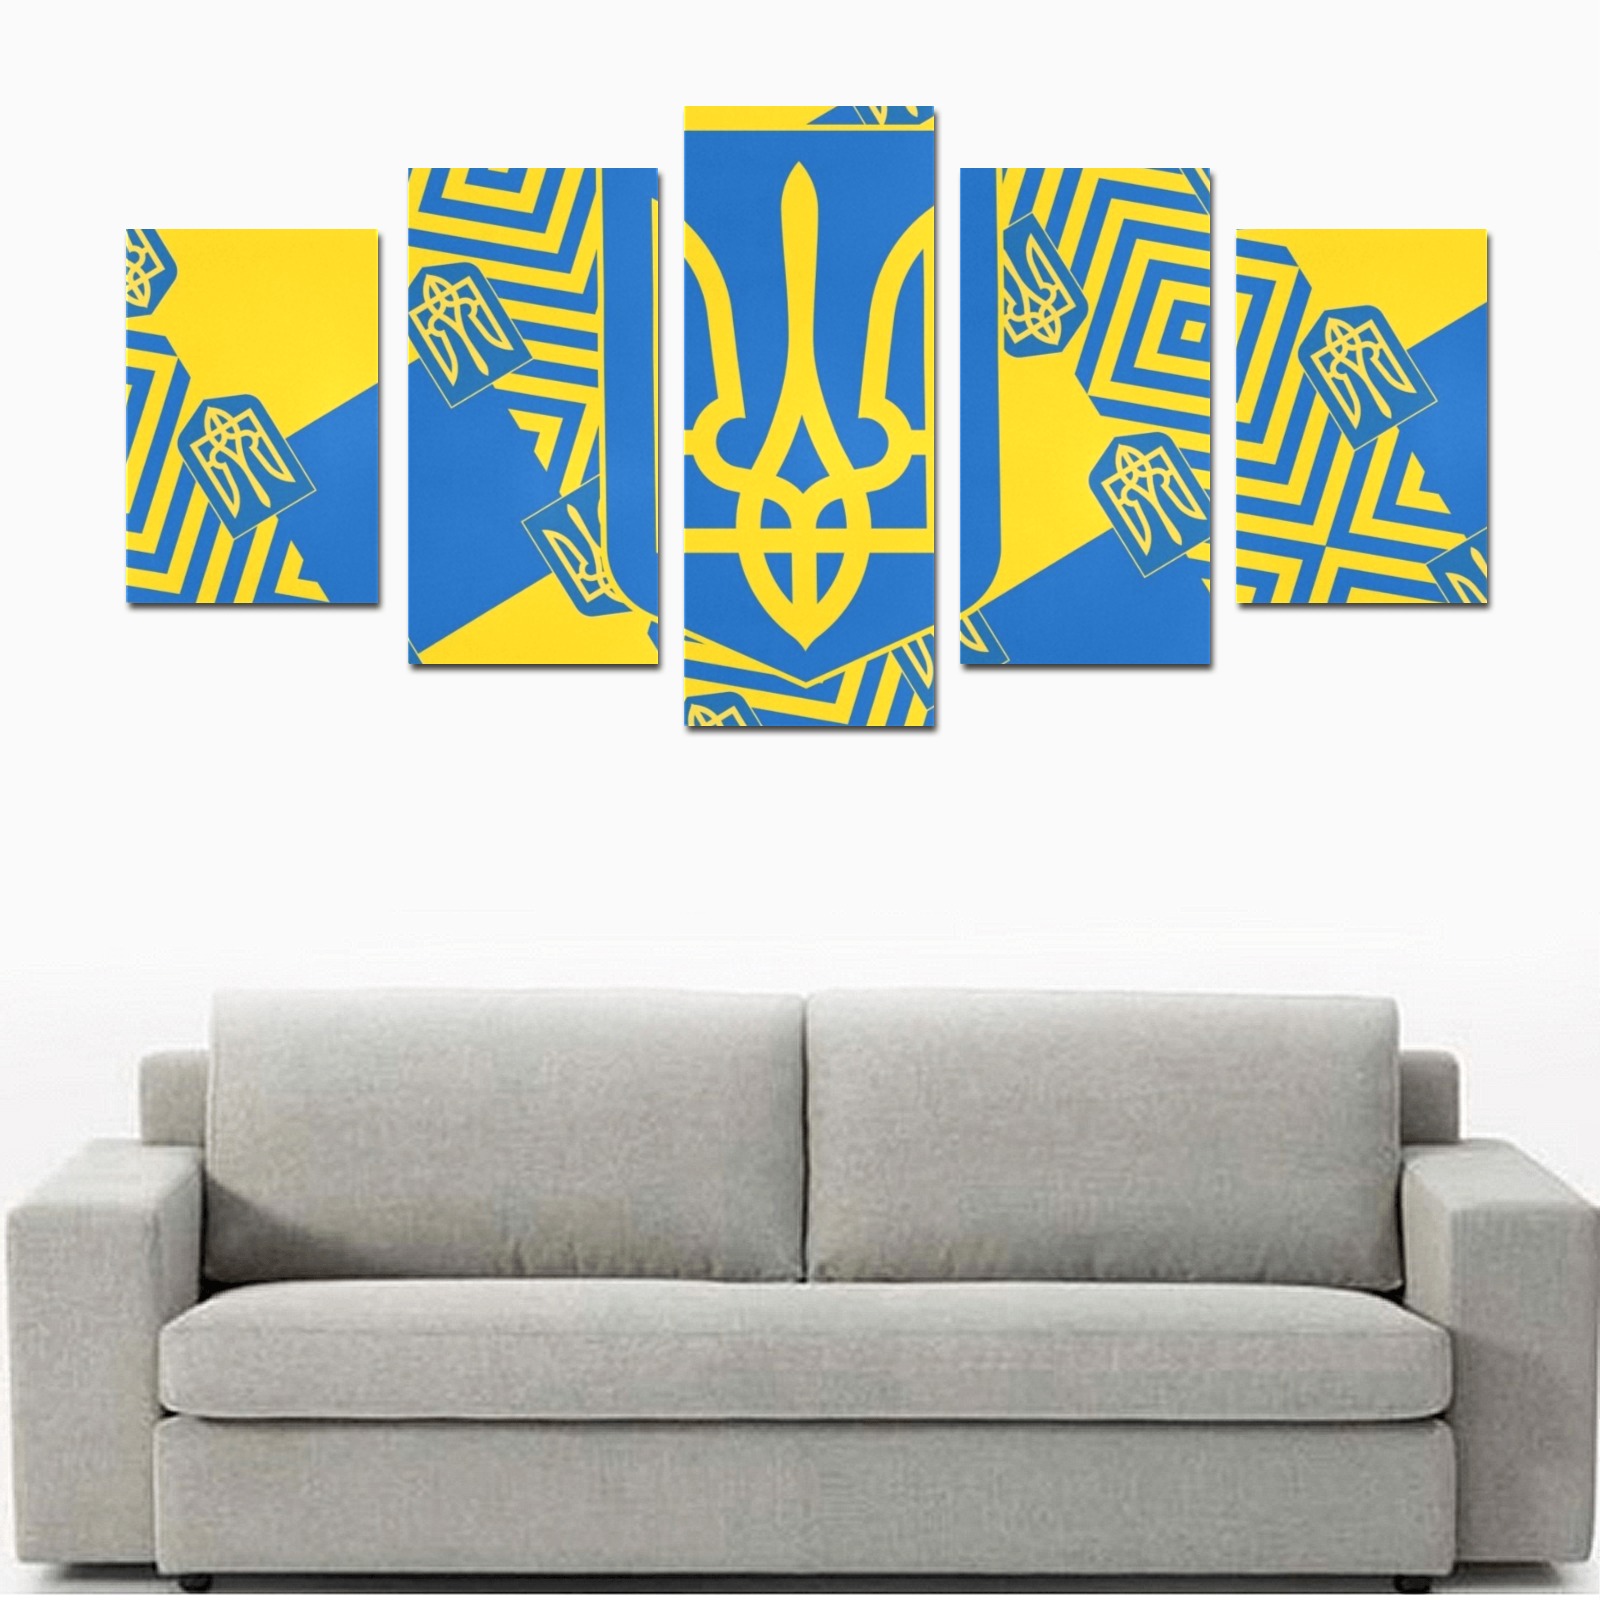 UKRAINE 2 Canvas Print Sets D (No Frame)